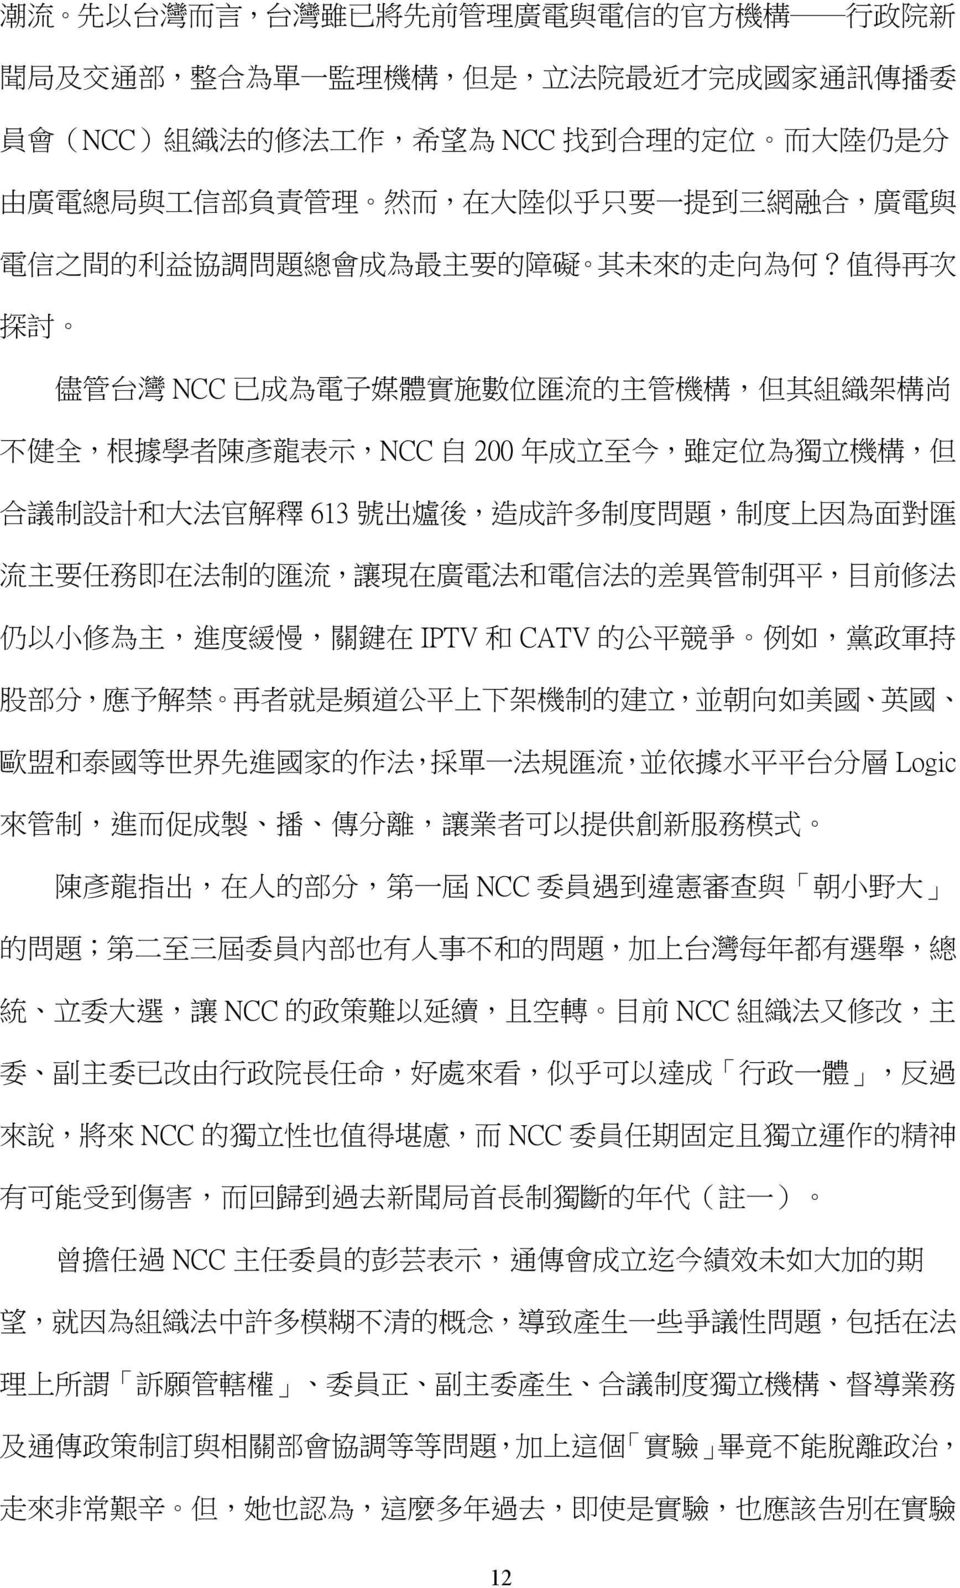 值 得 再 次 探 討 儘 管 台 灣 NCC 已 成 為 電 子 媒 體 實 施 數 位 匯 流 的 主 管 機 構, 但 其 組 織 架 構 尚 不 健 全, 根 據 學 者 陳 彥 龍 表 示,NCC 自 200 年 成 立 至 今, 雖 定 位 為 獨 立 機 構, 但 合 議 制 設 計 和 大 法 官 解 釋 613 號 出 爐 後, 造 成 許 多 制 度 問 題, 制 度 上 因